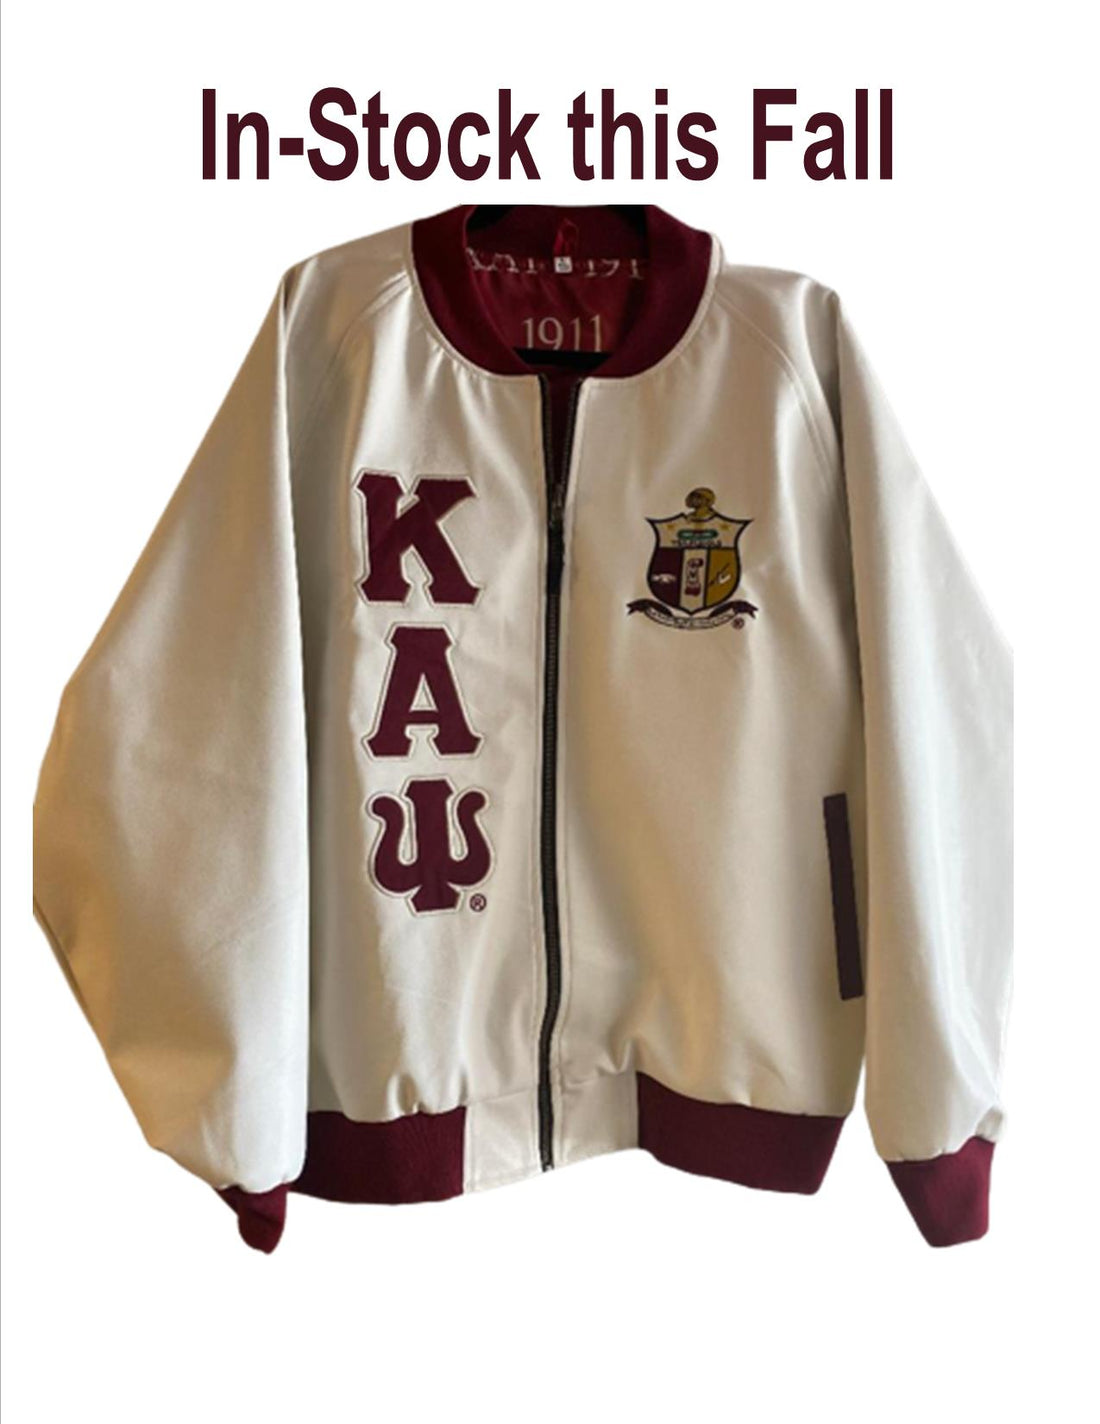 Kappa P/U Cream Leather Jacket